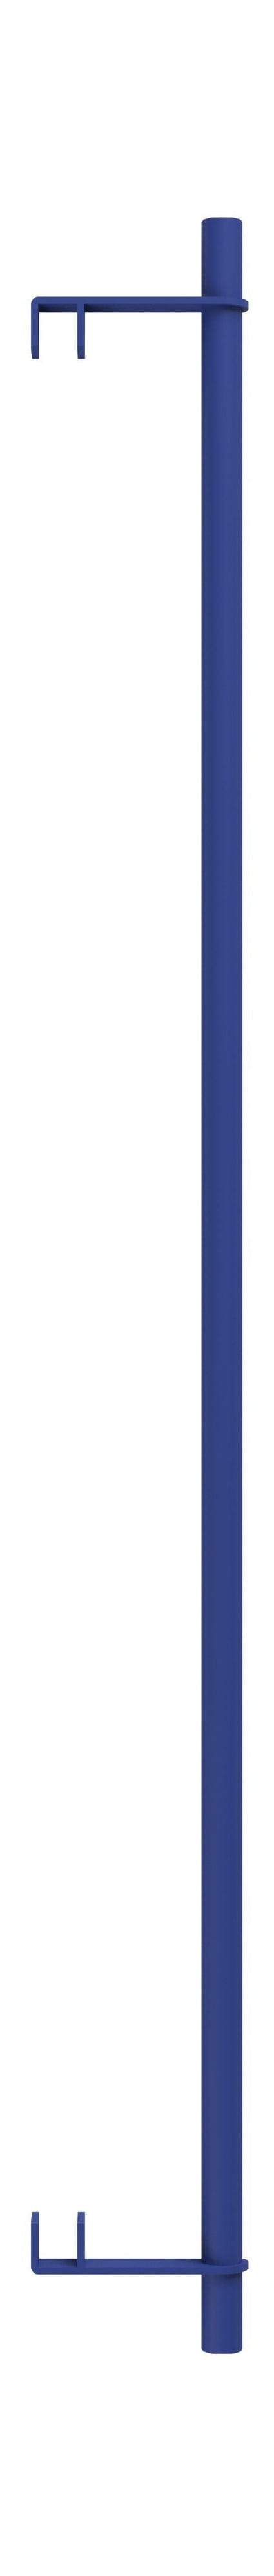 Sistema di scaffalature MOEBE/Scaffali per scaffalature a muro Bar 85 cm, blu intenso